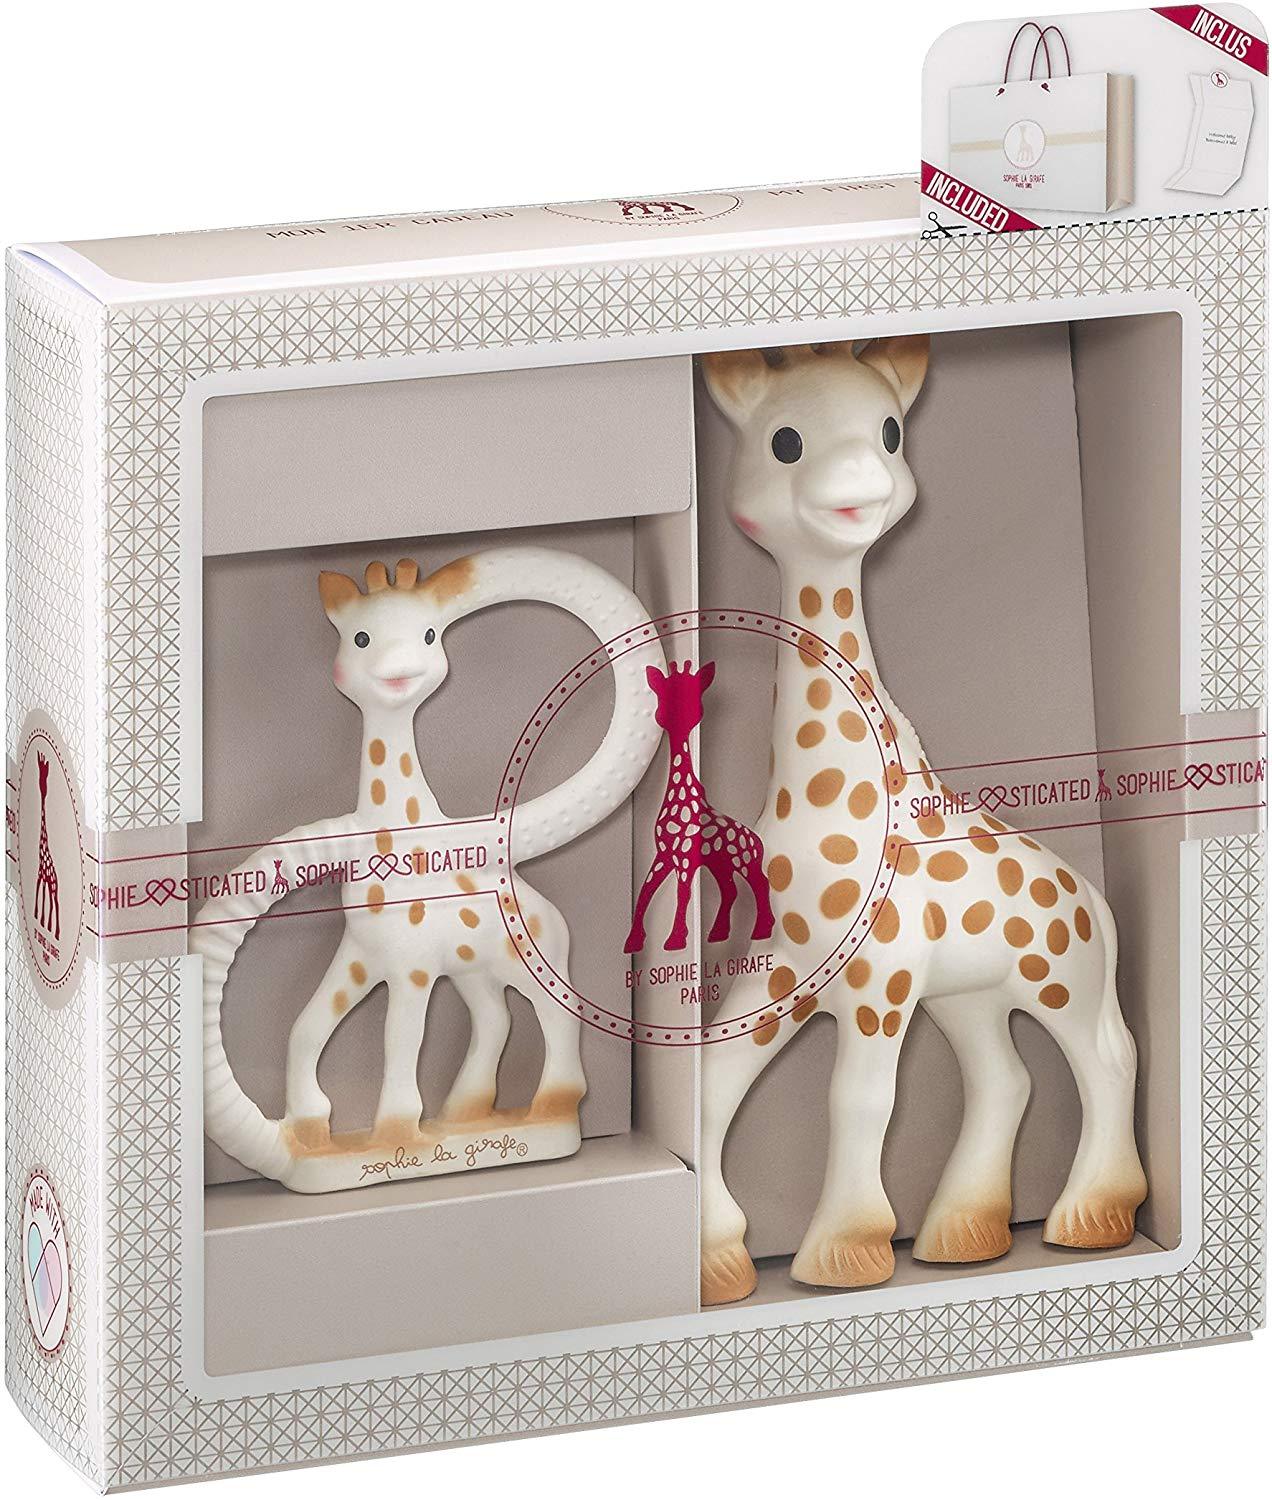 Girafa Sophie - Conjunto sofisticado de mordedor - Conjunto de presente para dentição do bebê Anne Claire Baby Store Classic Creation Set 1 